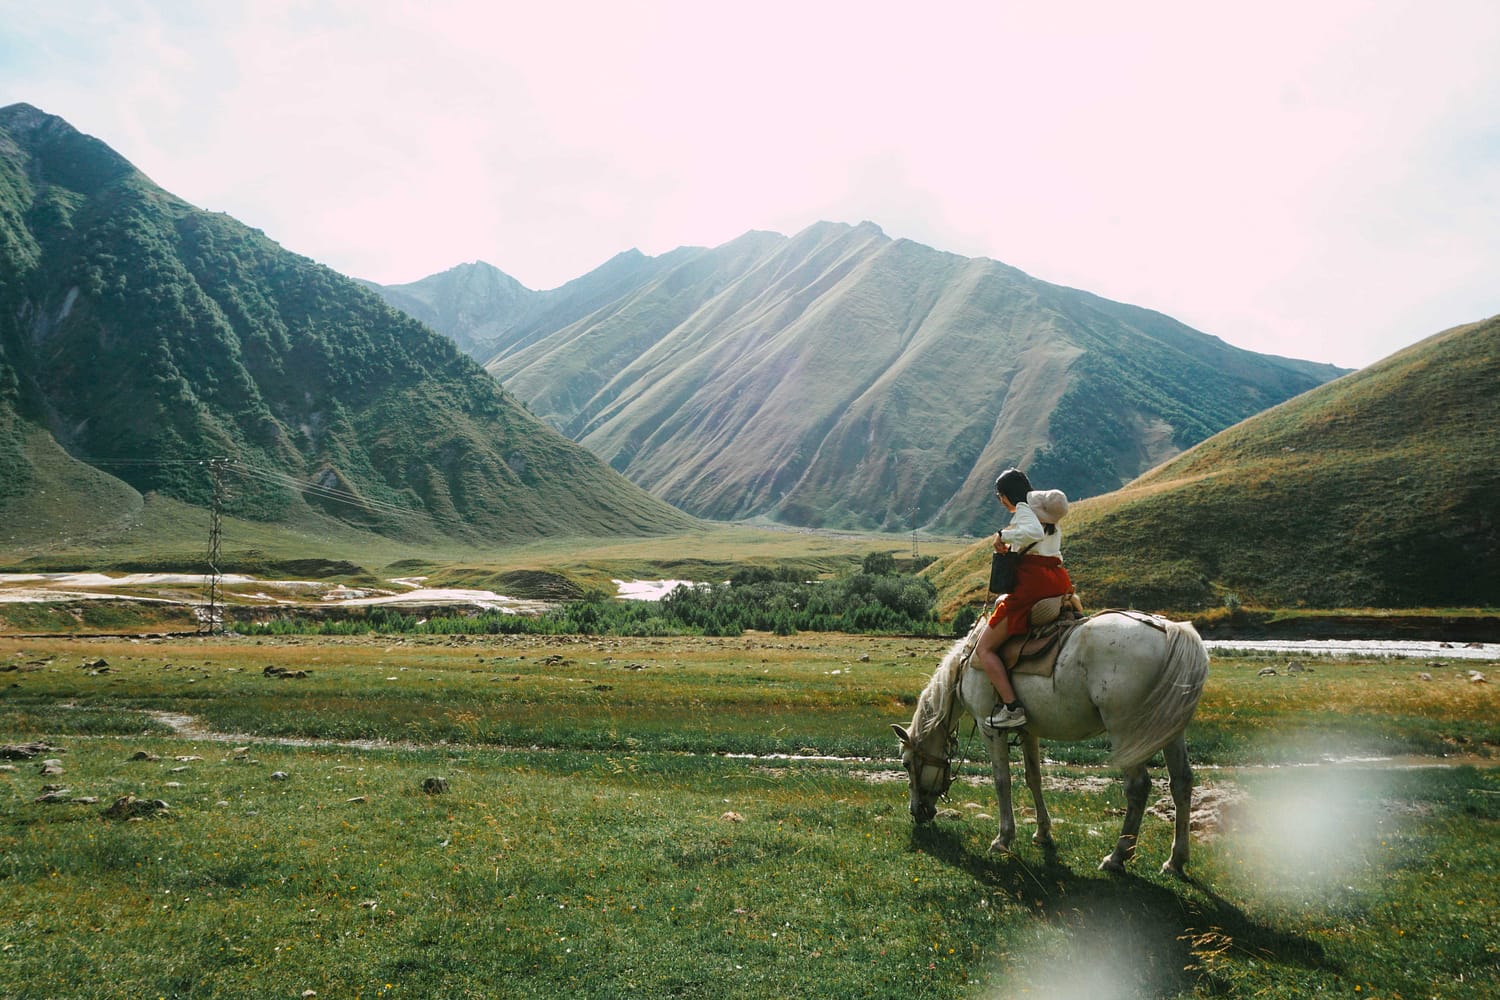 Horse riding tours in Kazbegi, Truso Valley, Caucasus mountains